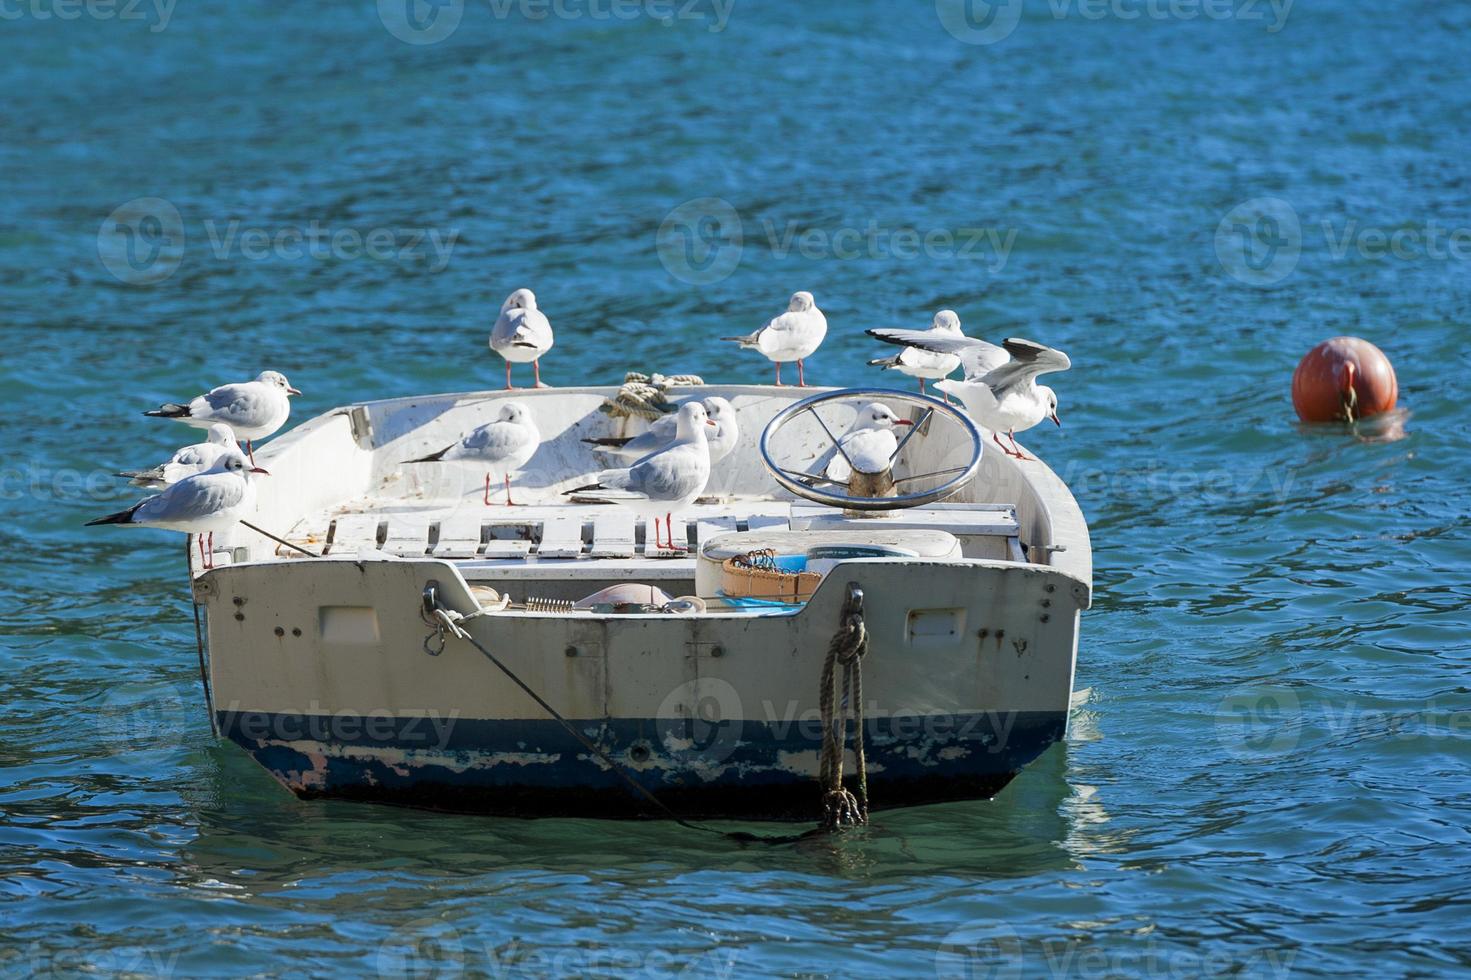 Seagulls resting on a boat in portofino photo